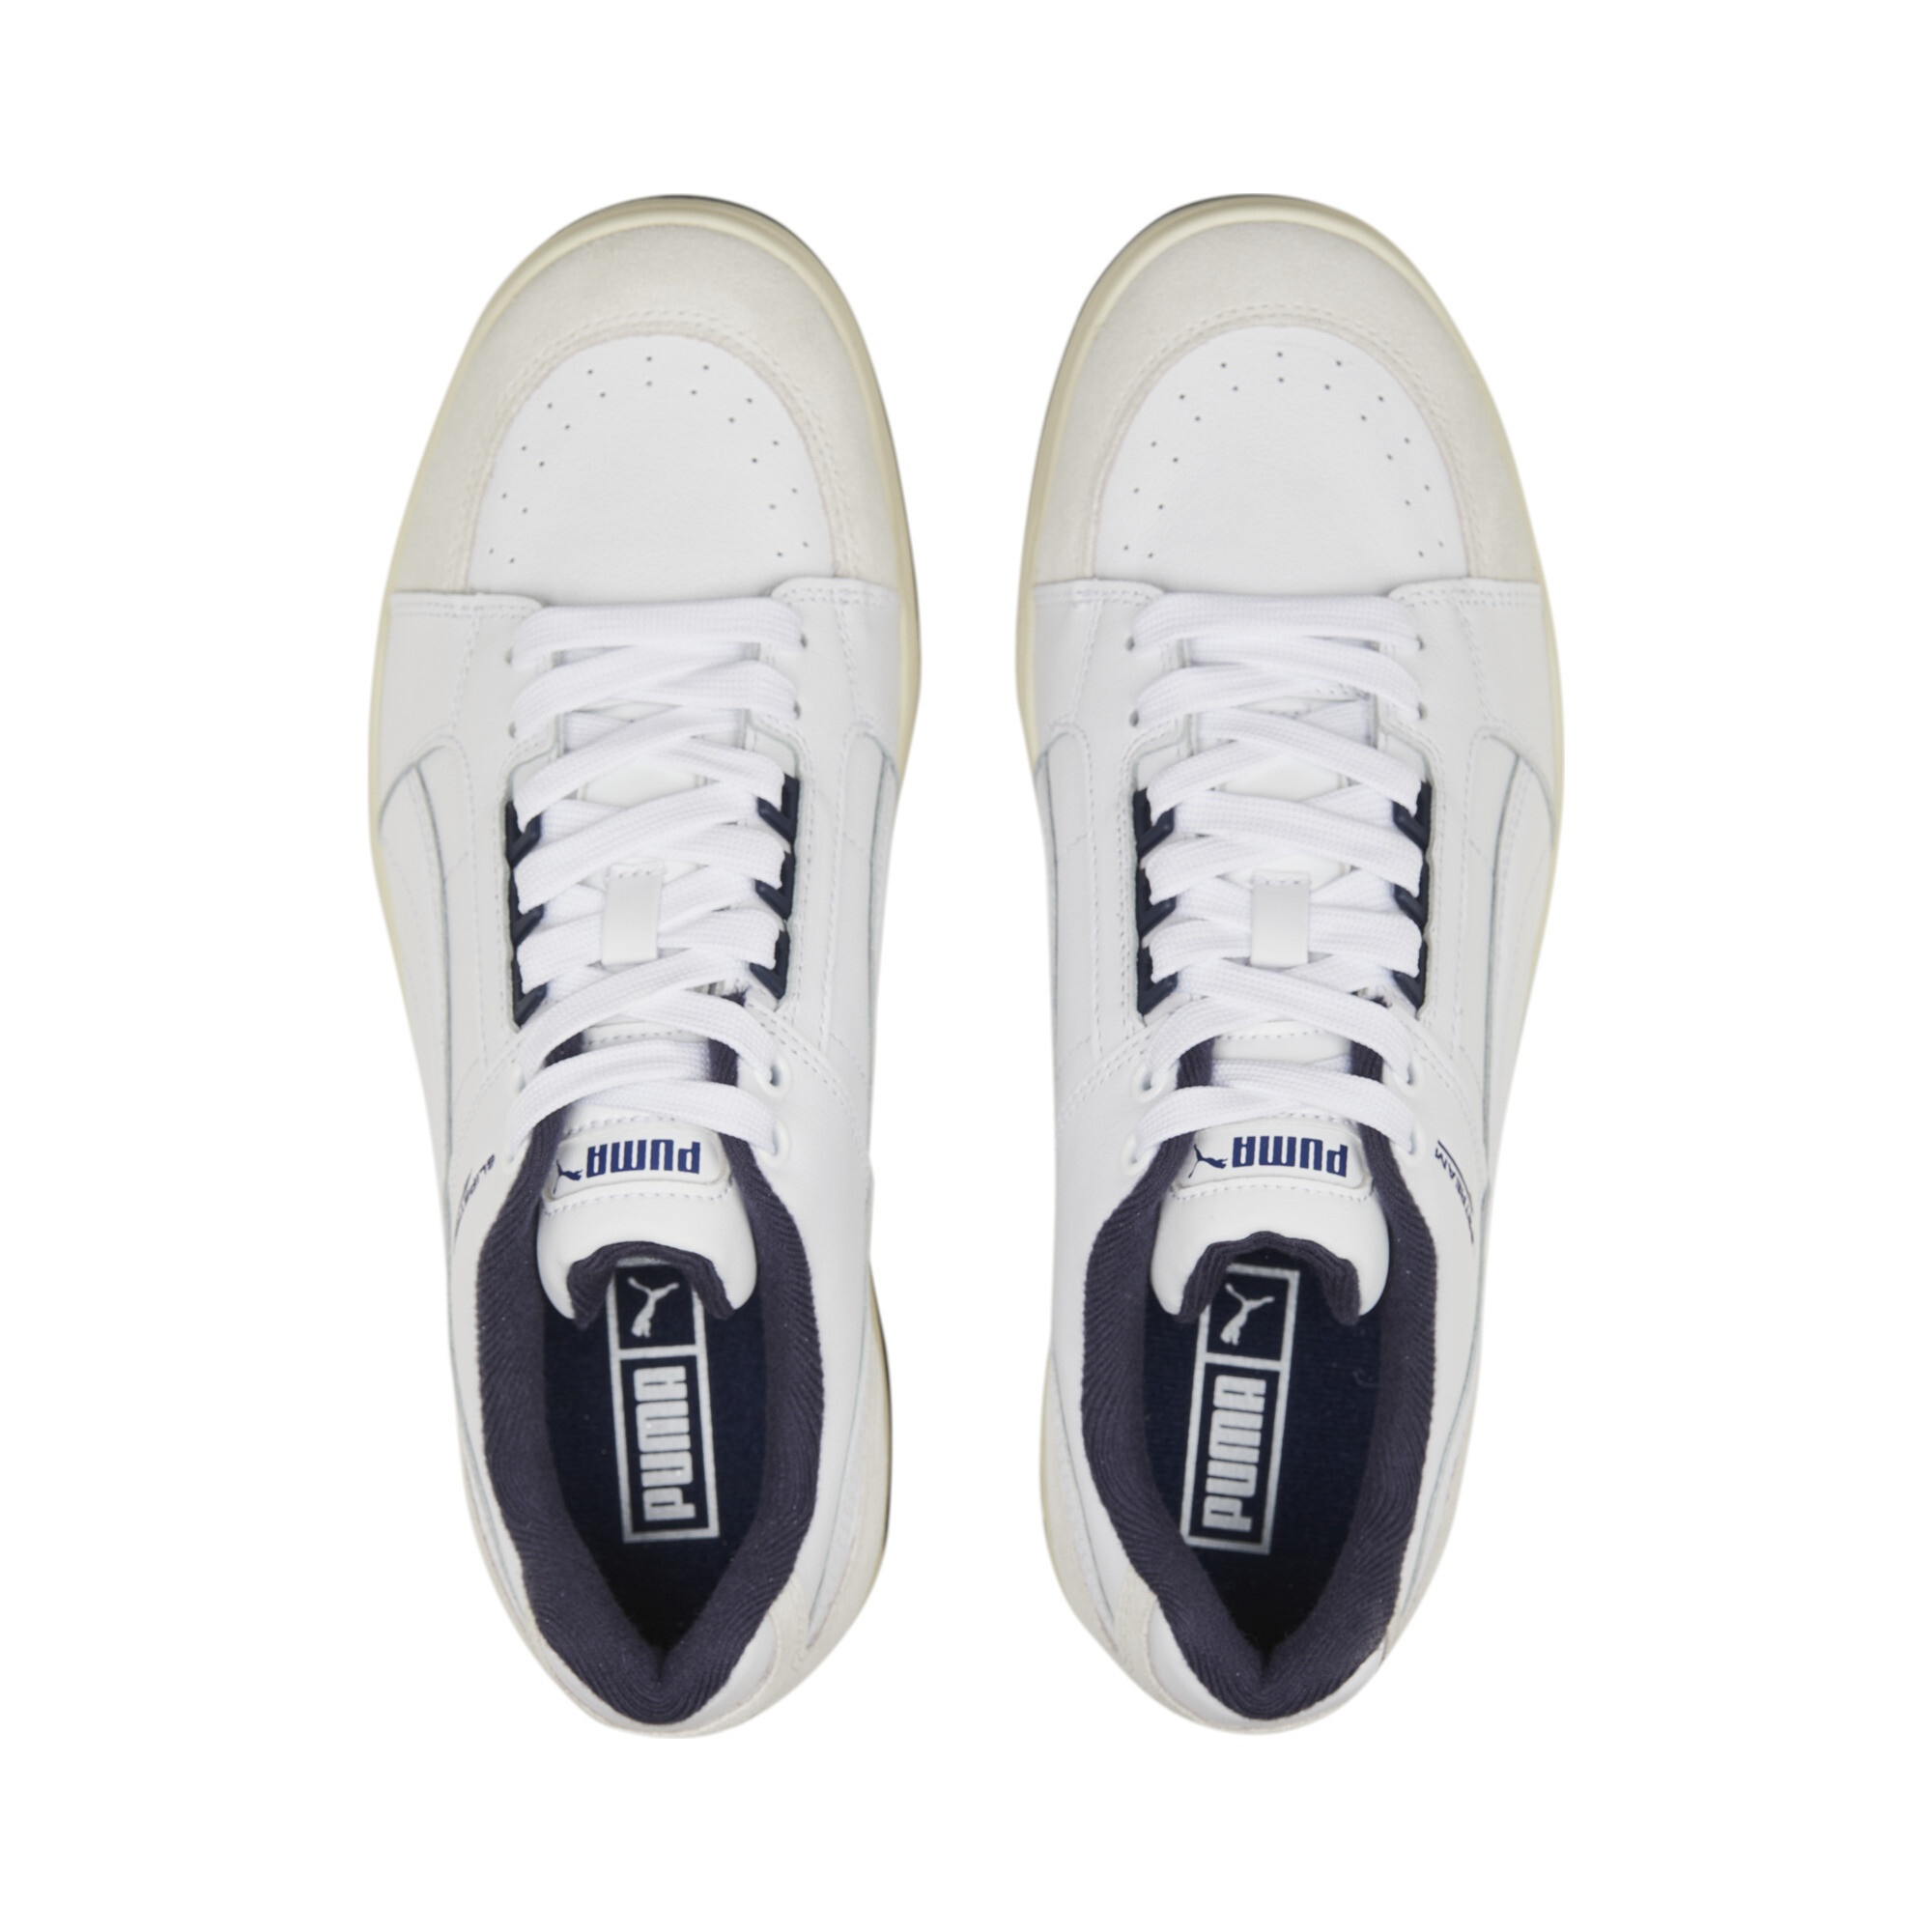 Puma Slipstream Lo Retro Trainers, White, Size 39, Shoes